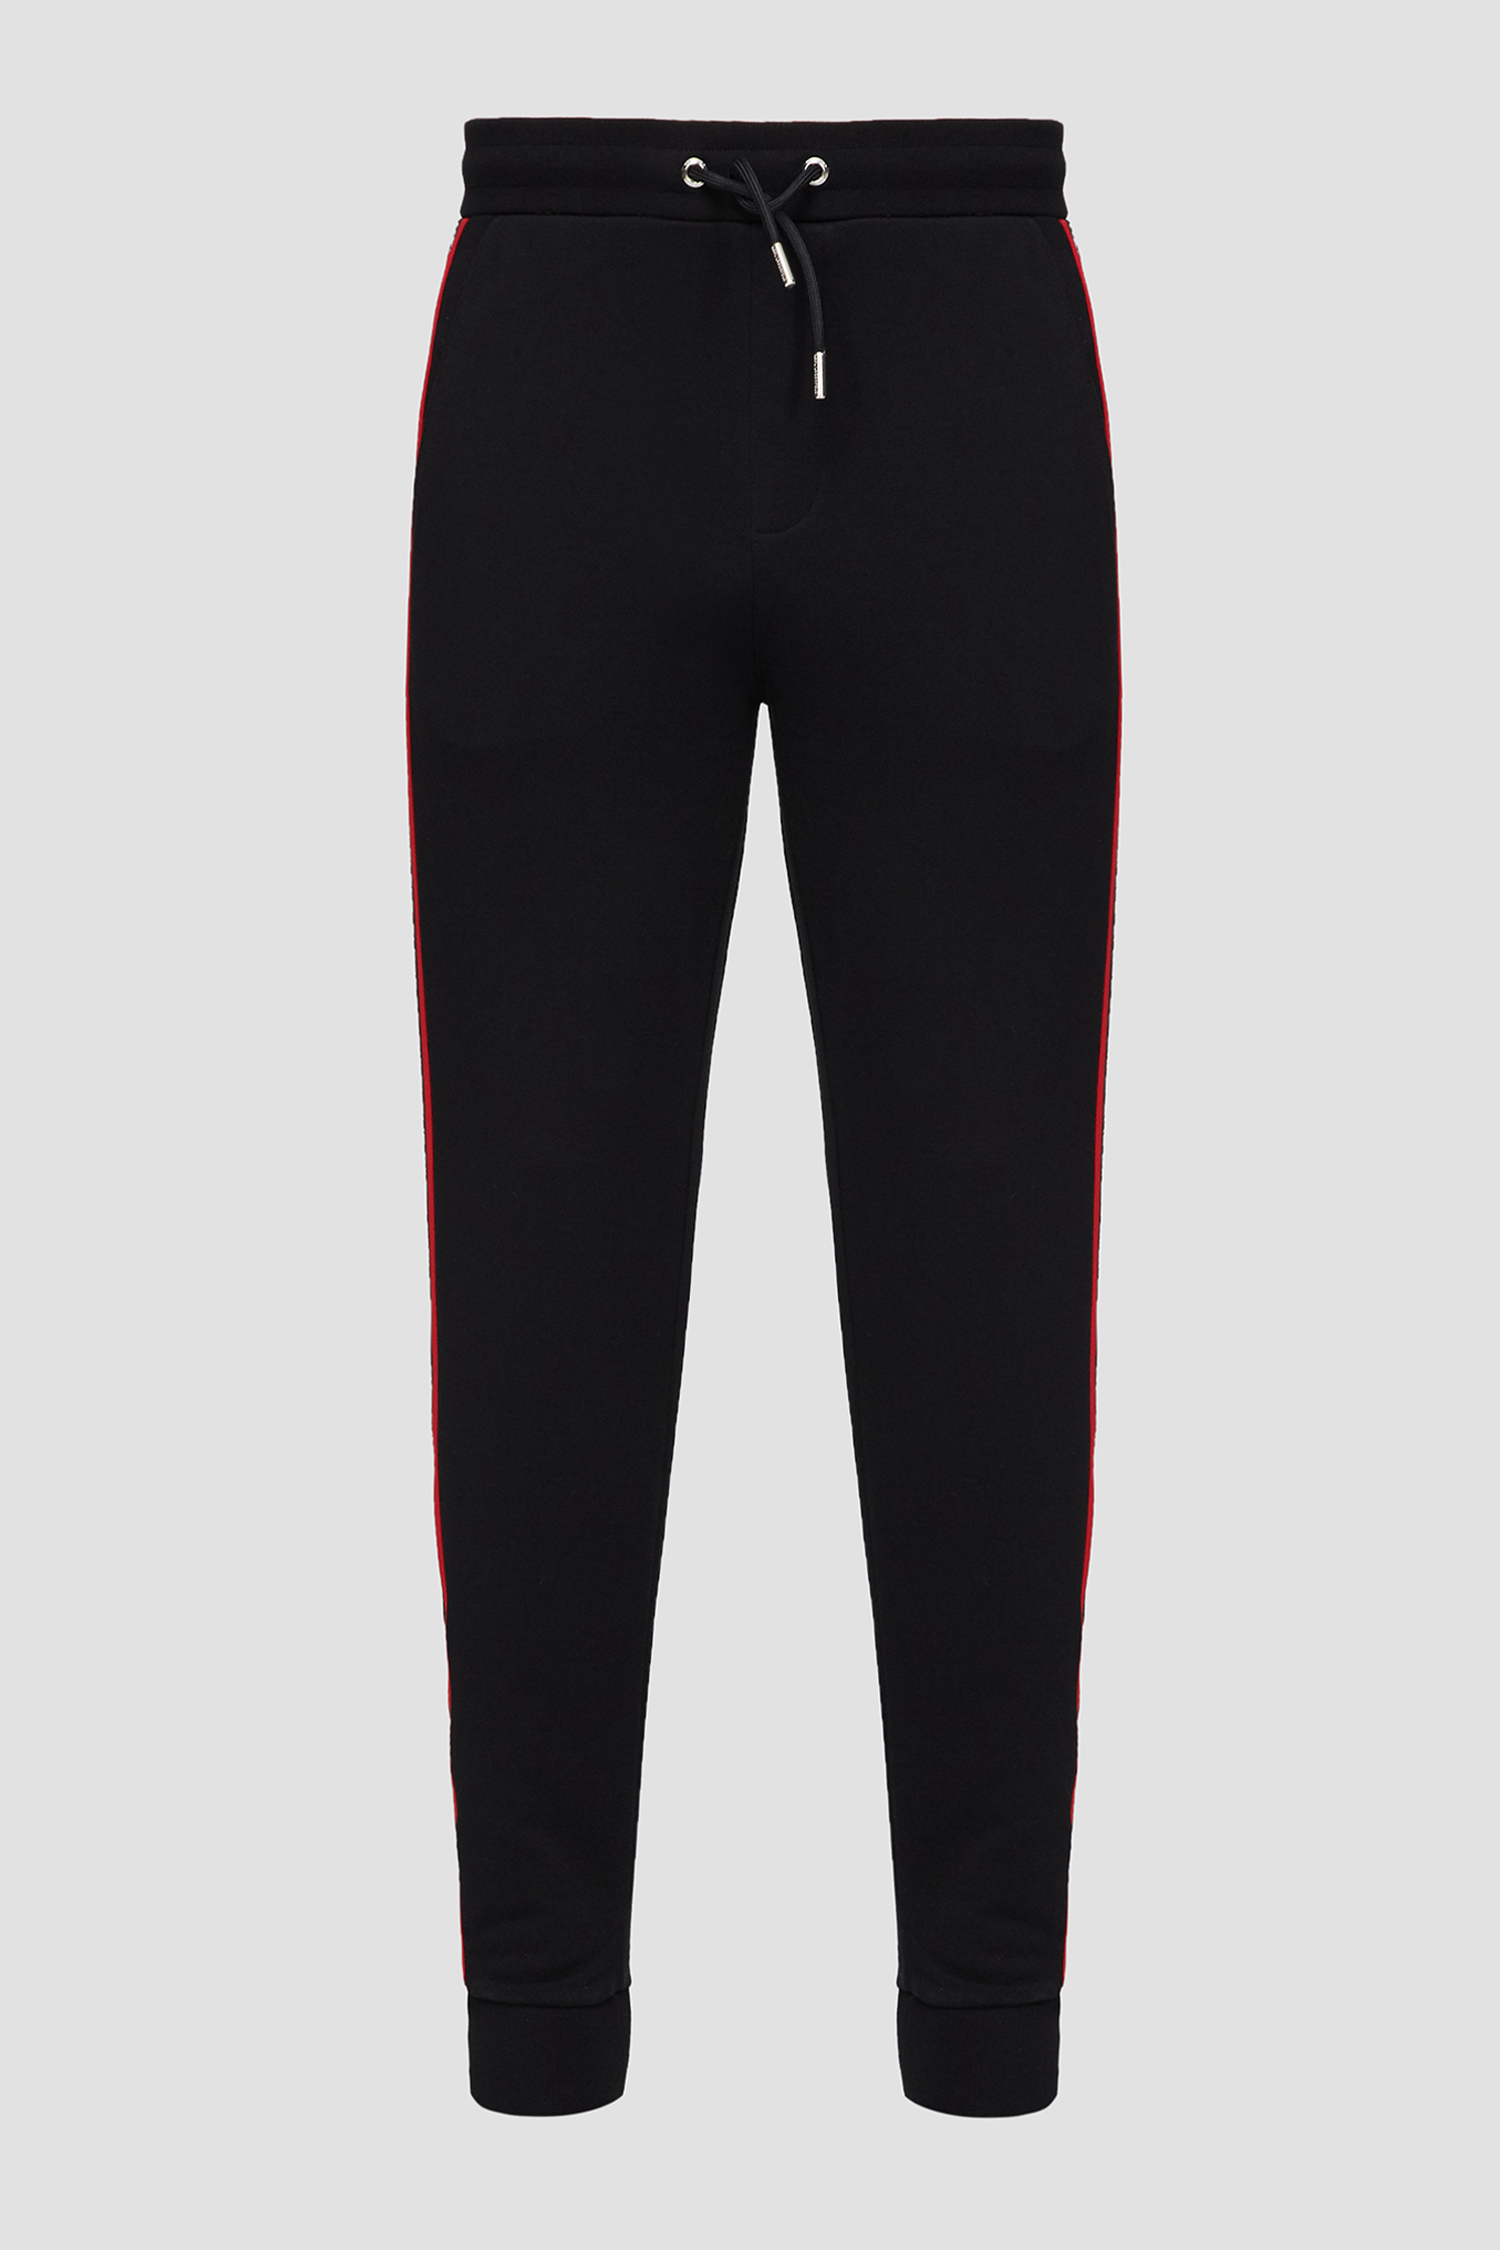 Мужские черные спортивные брюки Karl Lagerfeld 532900.705425;990